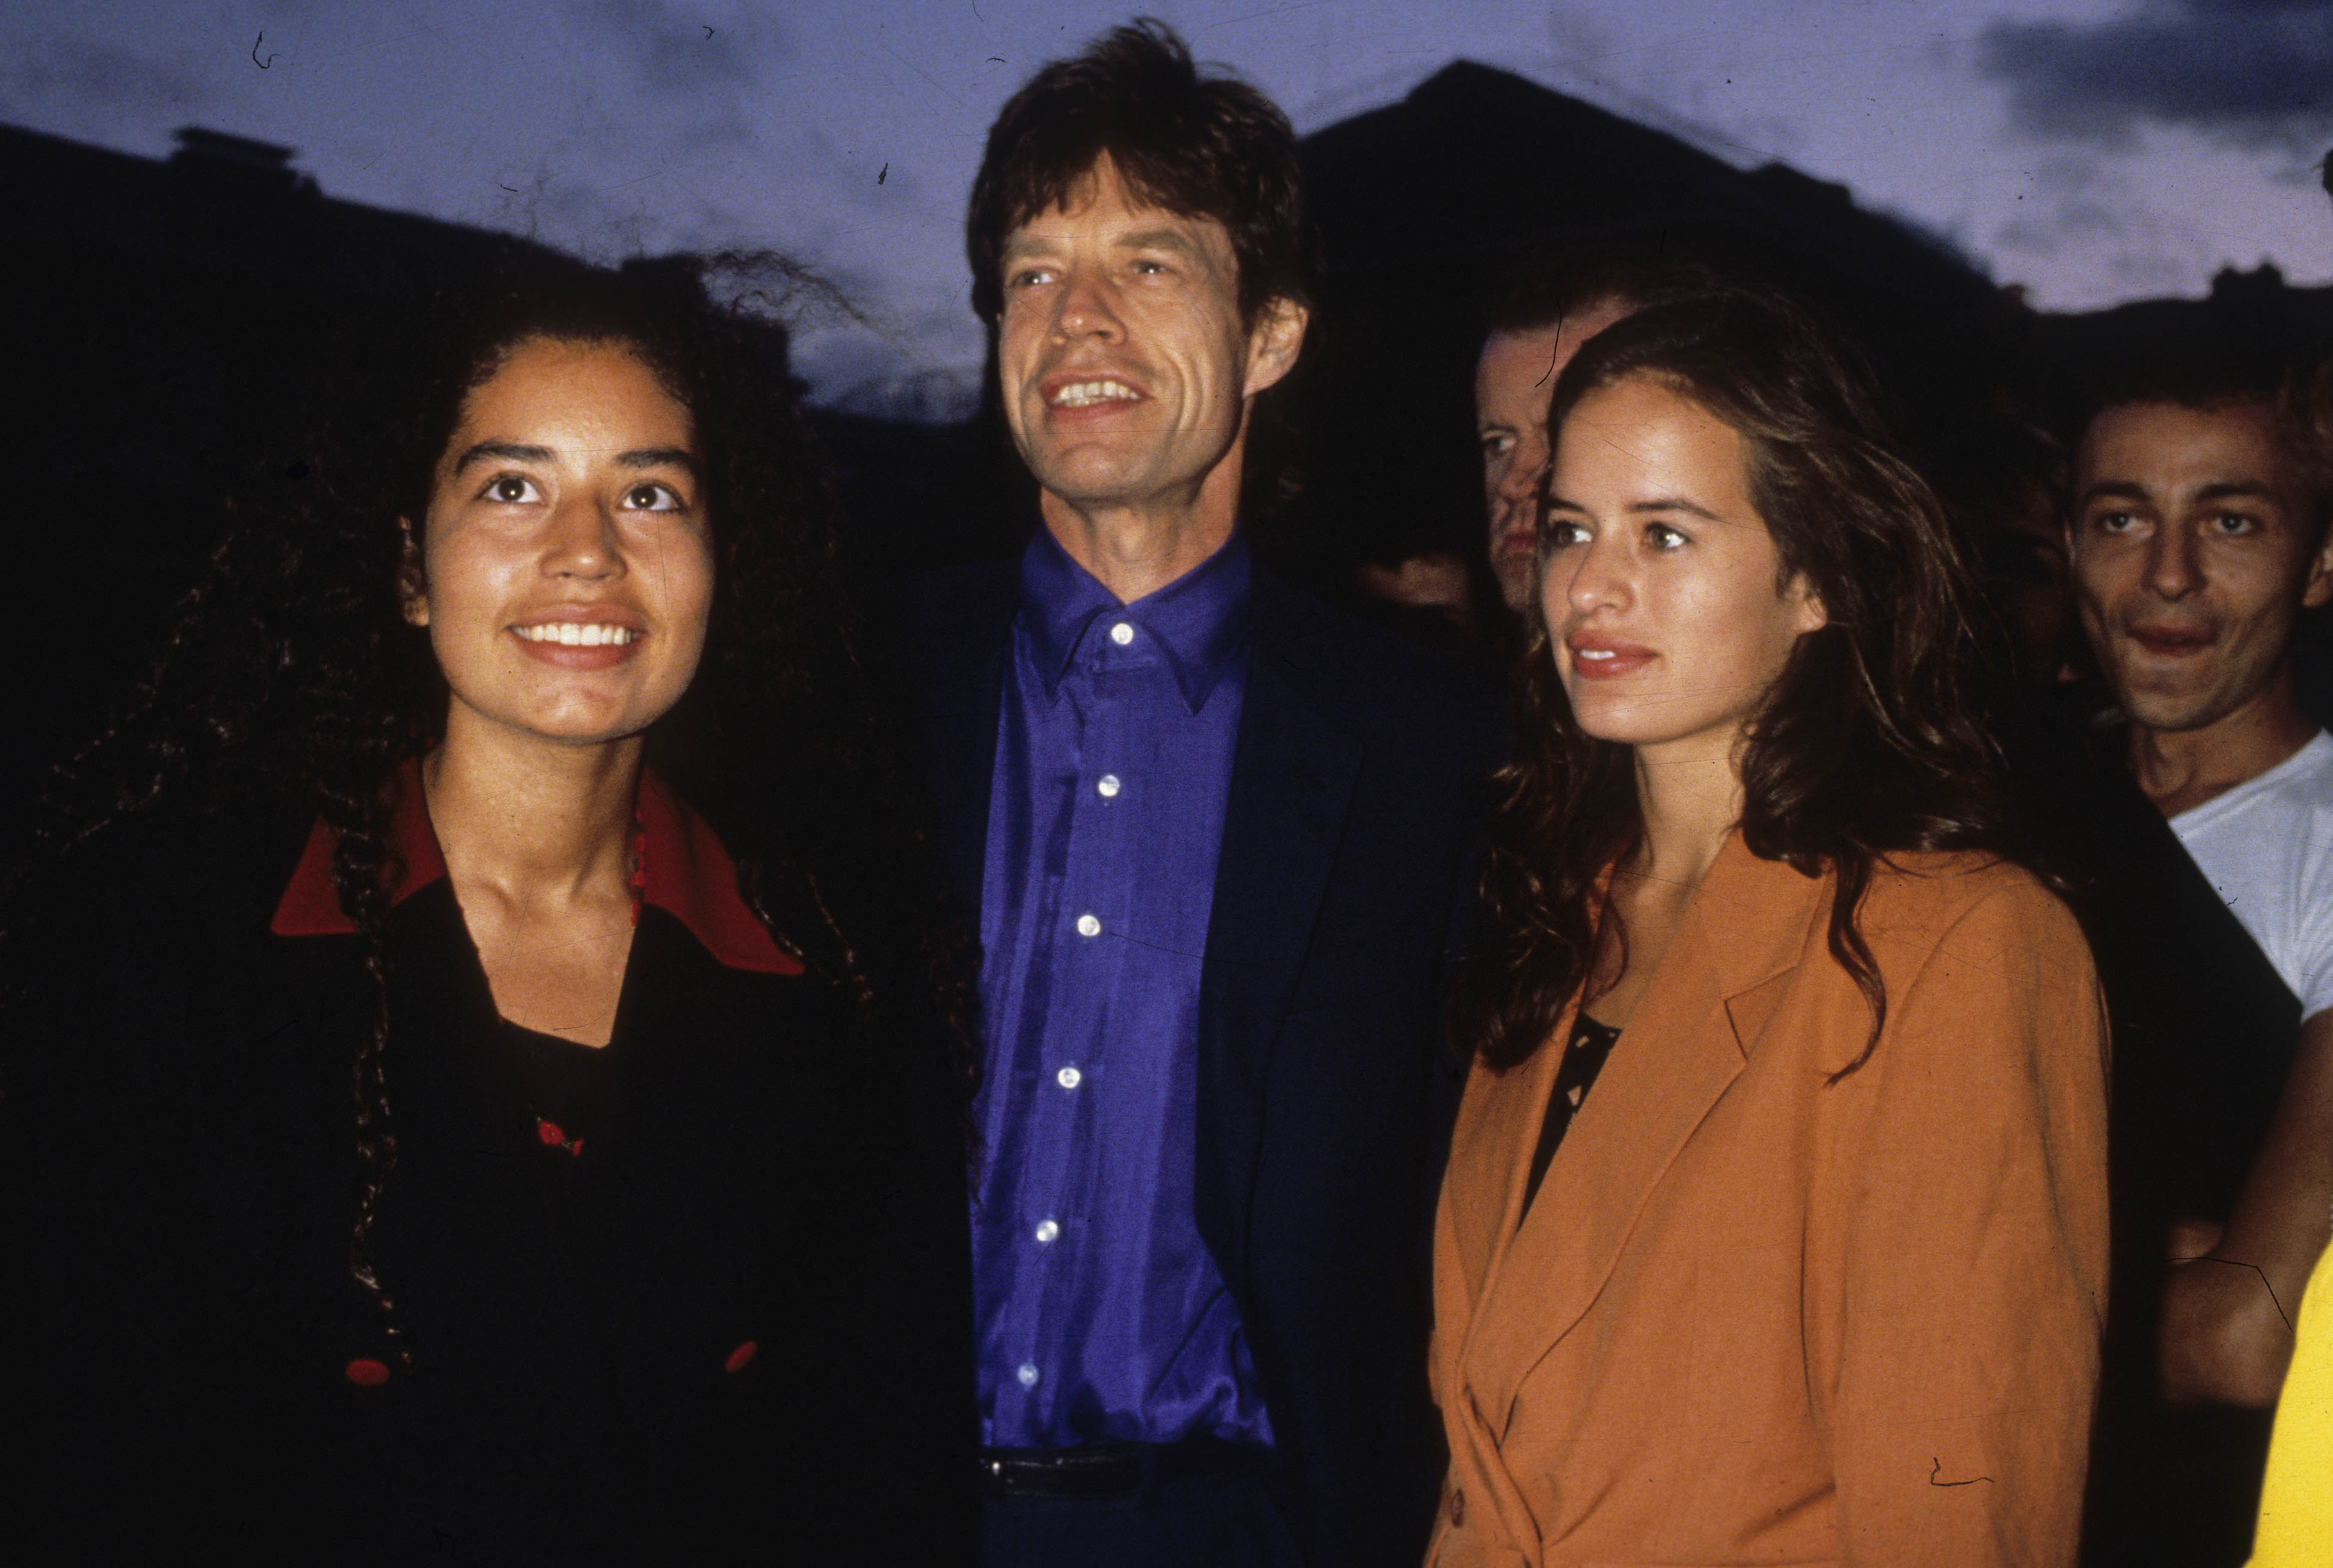 Le chanteur des "Rolling Stones", Mick Jagger, pose avec ses filles Karis et Jade (à droite) en 1995 à Paris, France. / Source : Getty Images